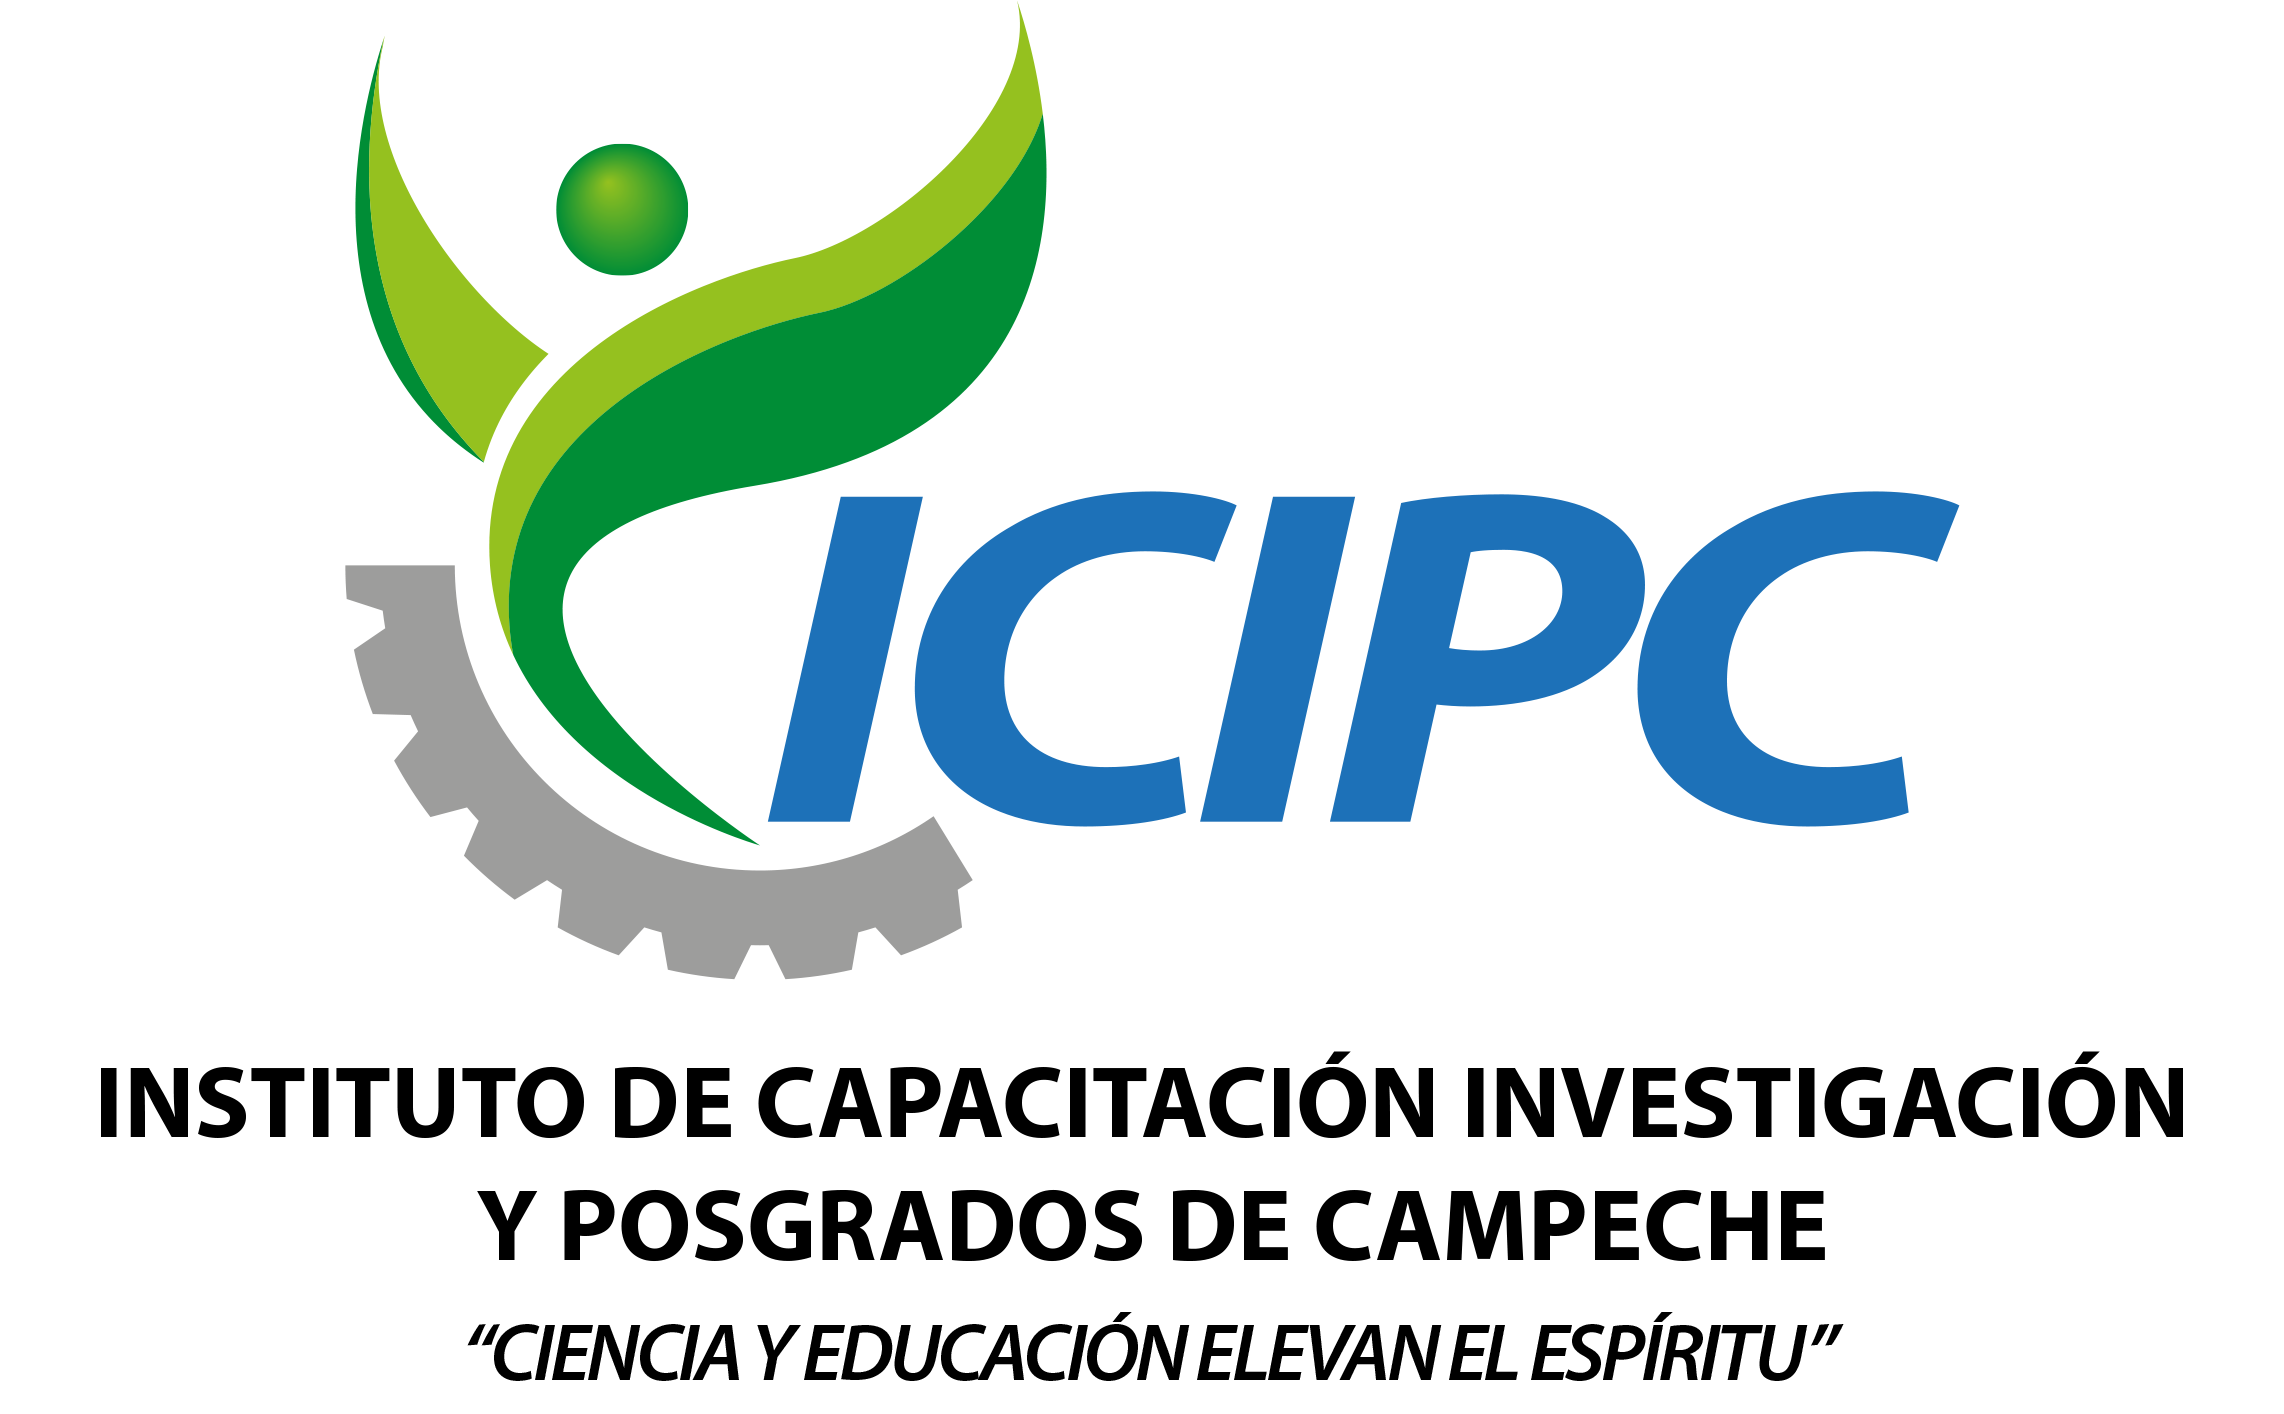 ICIPC - Instituto de Capacitación Investigación y Posgrados de Campeche